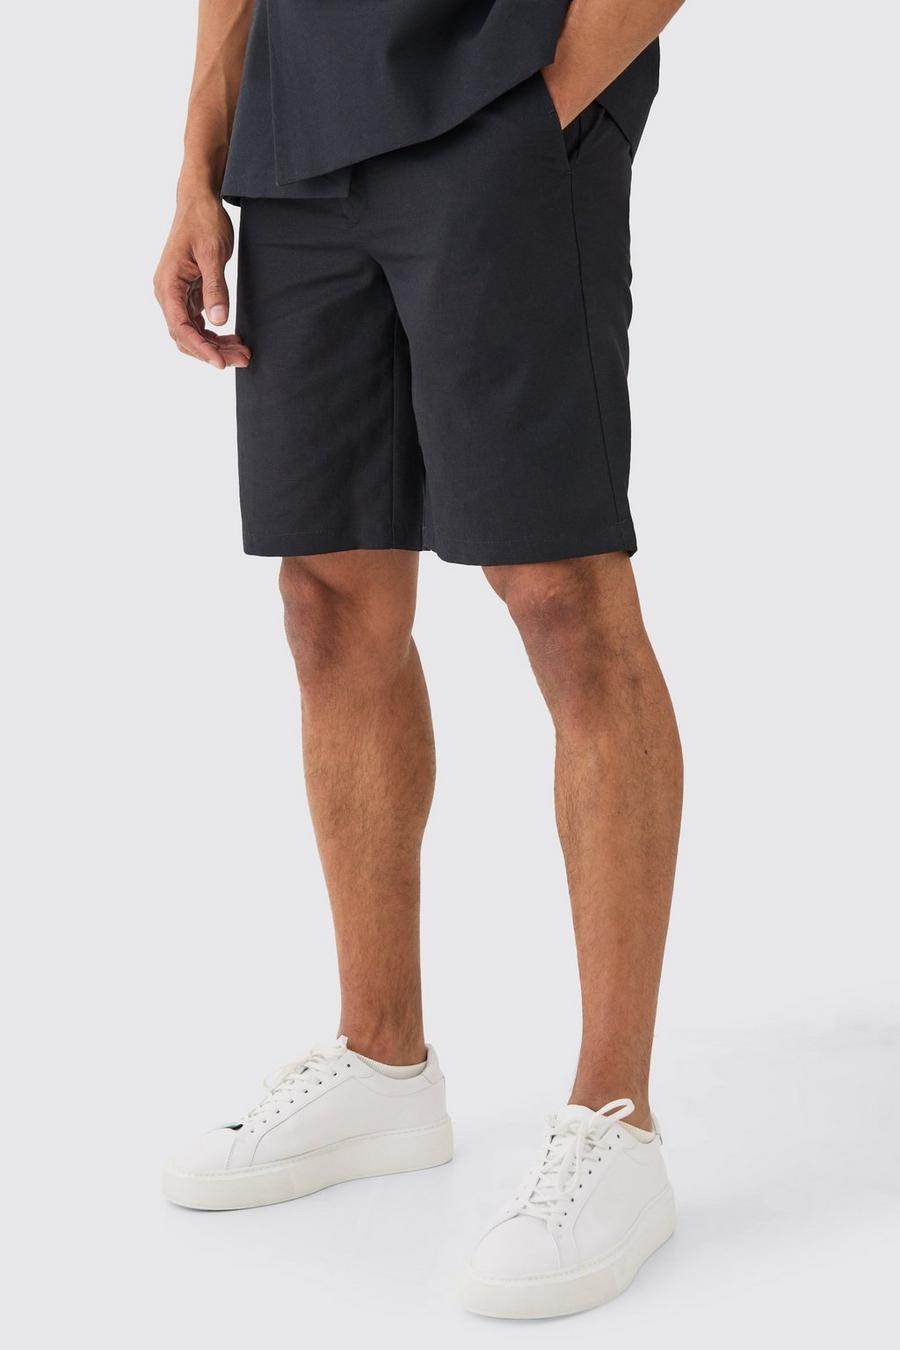 Black Elasticated Waistband Linen Blend Smart Relaxed Shorts